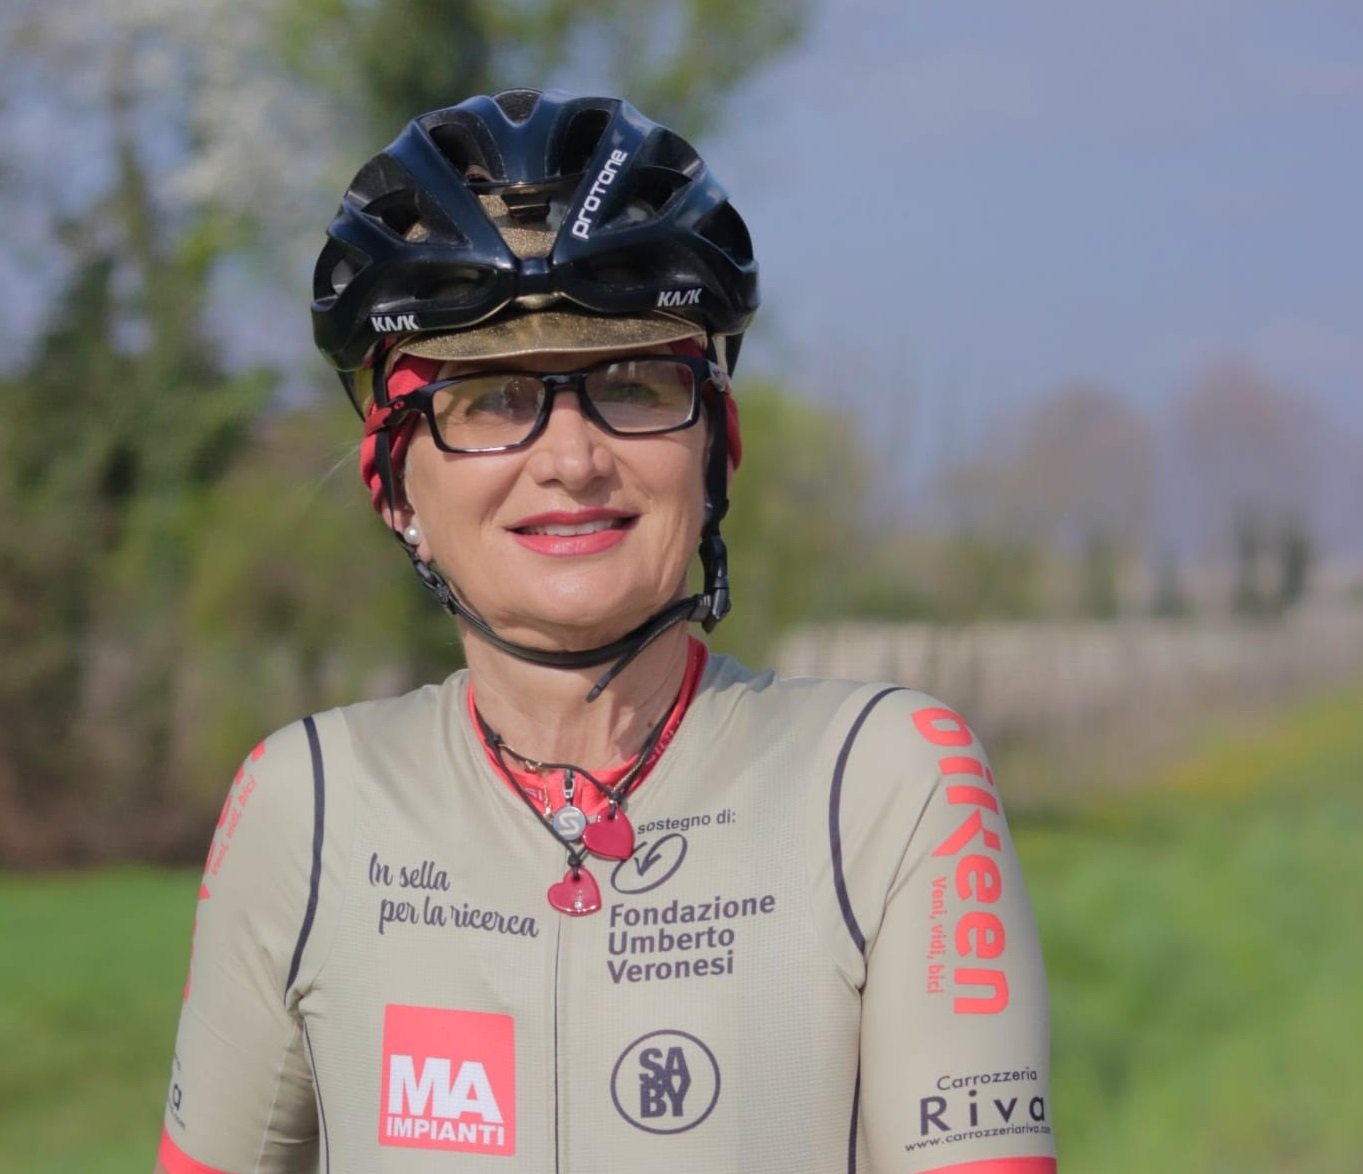 In sella per la ricerca: la ciclista amatoriale che combatte contro il cancro arriva ad Alessandria